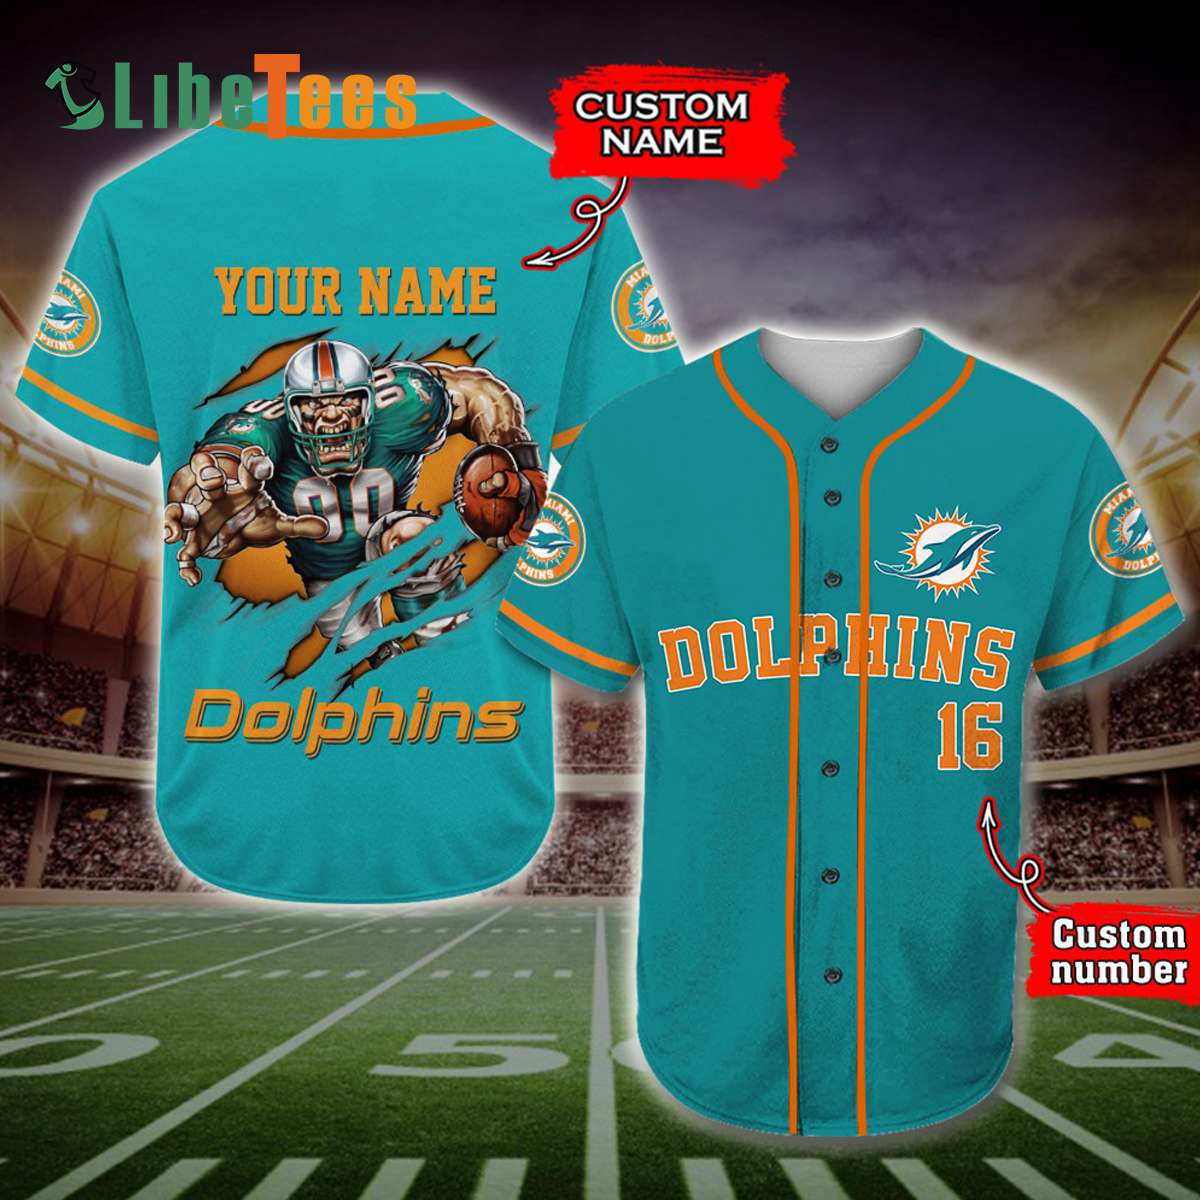 miami dolphins baseball jersey